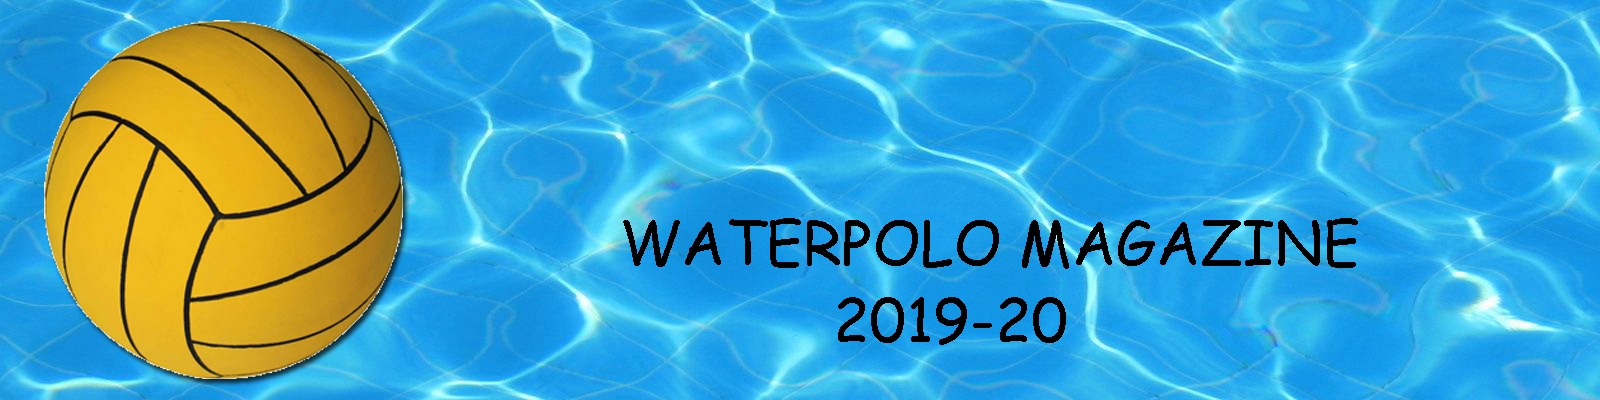 Water Polo Magazine anno 2019-20